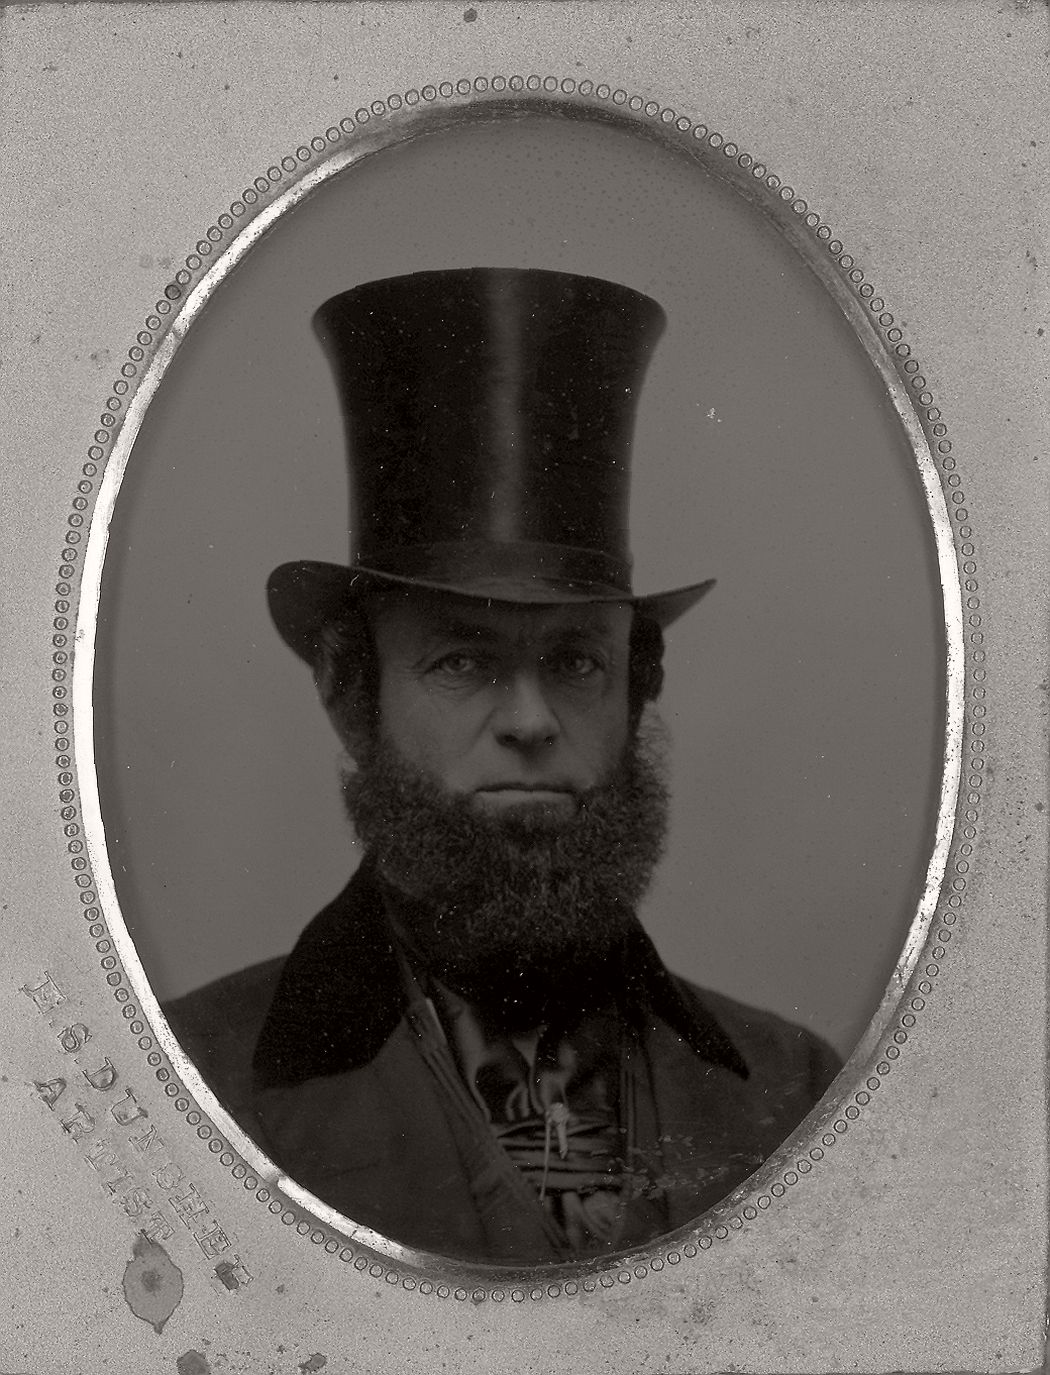 victorian-era-daguerreotype-of-men-in-hat-1850s-xix-century-18